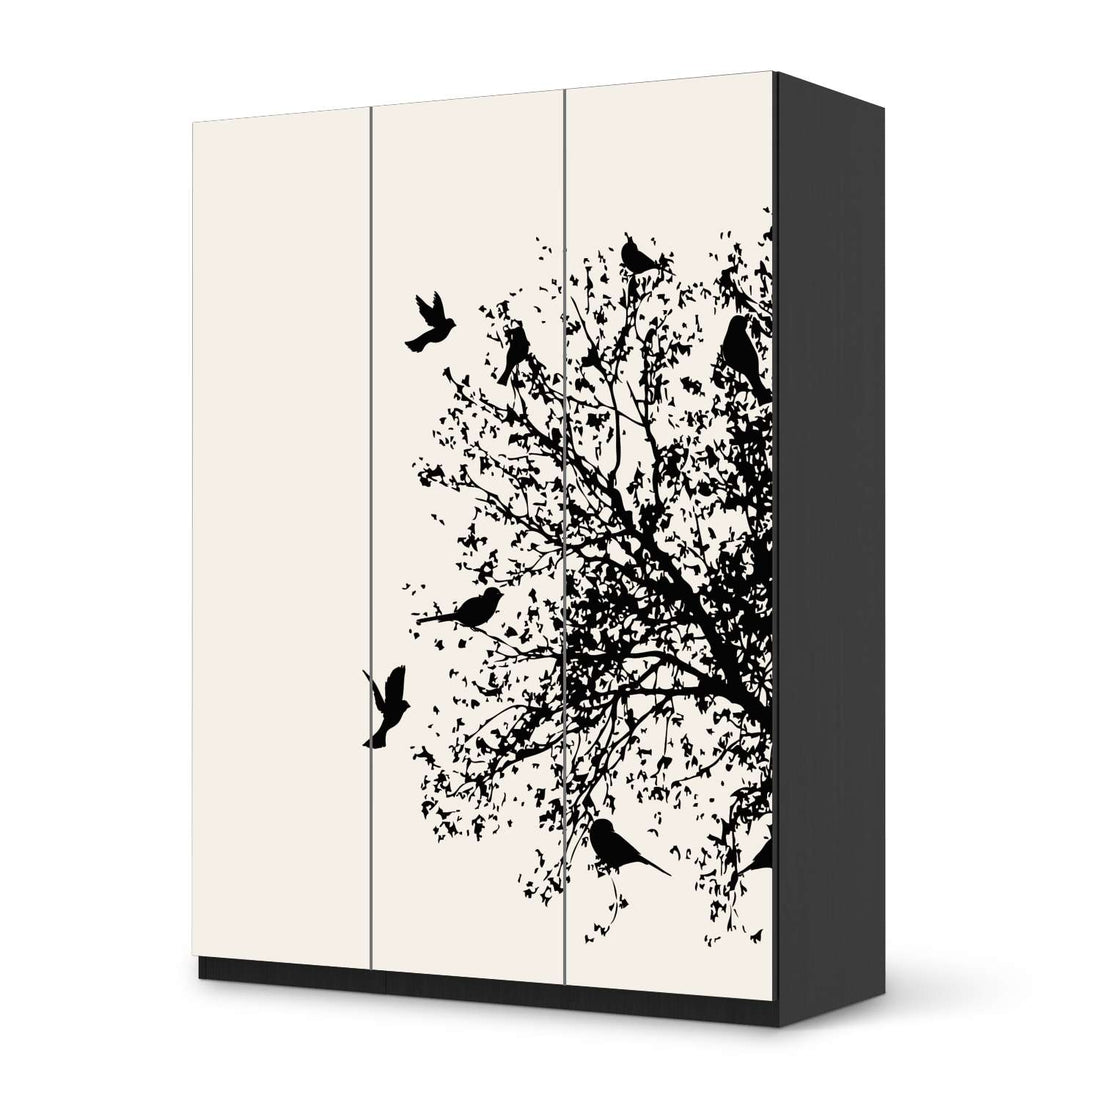 Folie für Möbel Tree and Birds 2 - IKEA Pax Schrank 201 cm Höhe - 3 Türen - schwarz